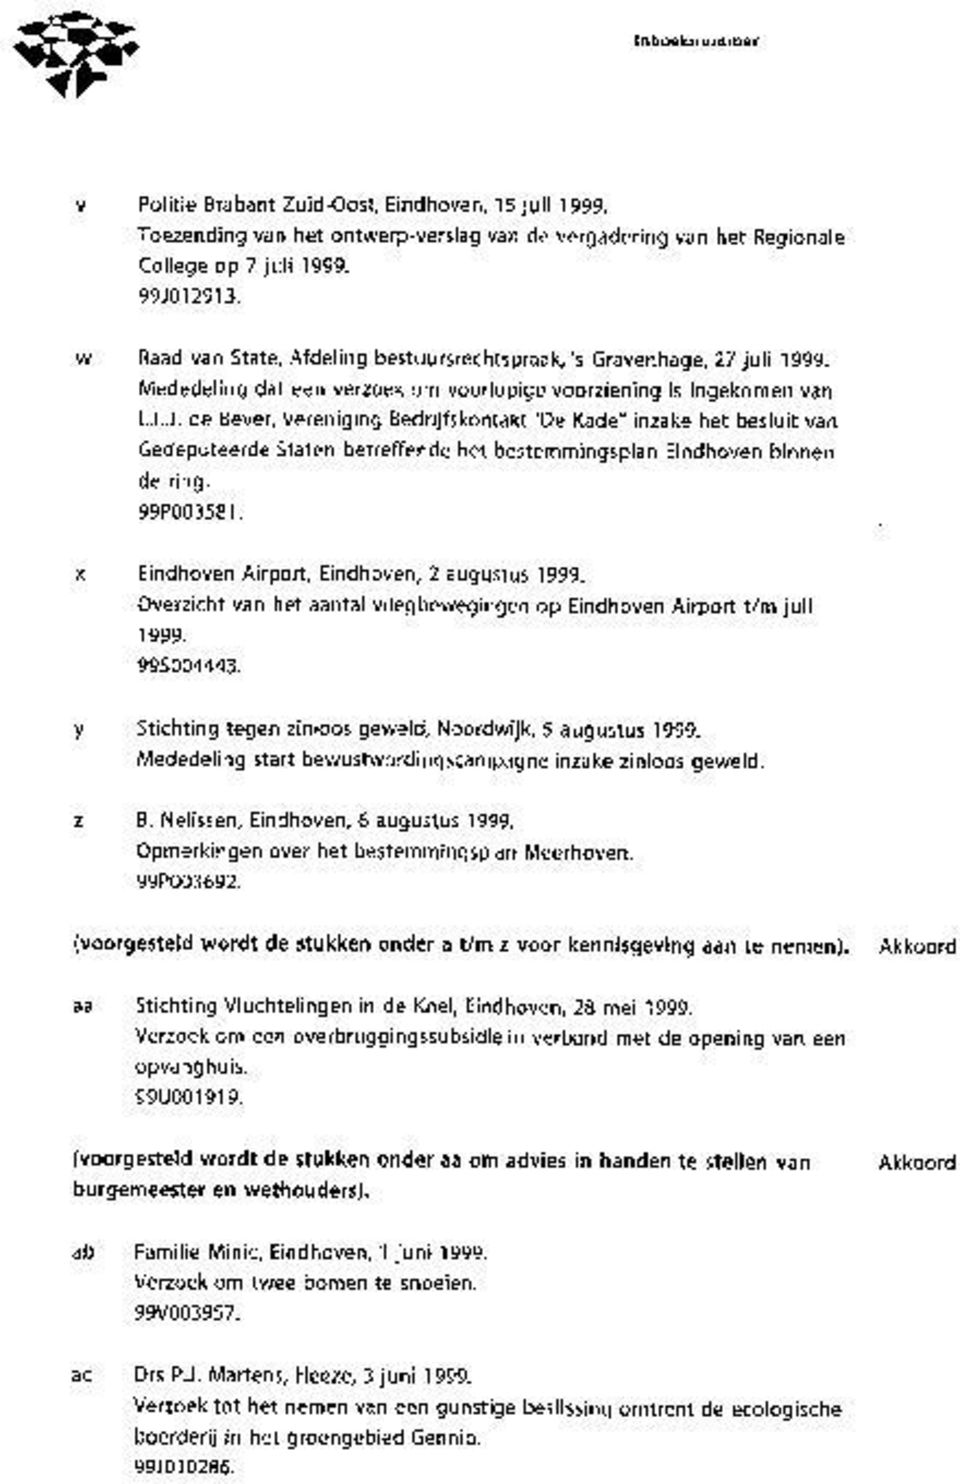 de Bever, Vereniging Bedrijfskontakt "De Kade" inzake het besluit van Gedeputeerde Staten betreffende het bestemmingsplan Eindhoven binnen de ring. 99P003581.